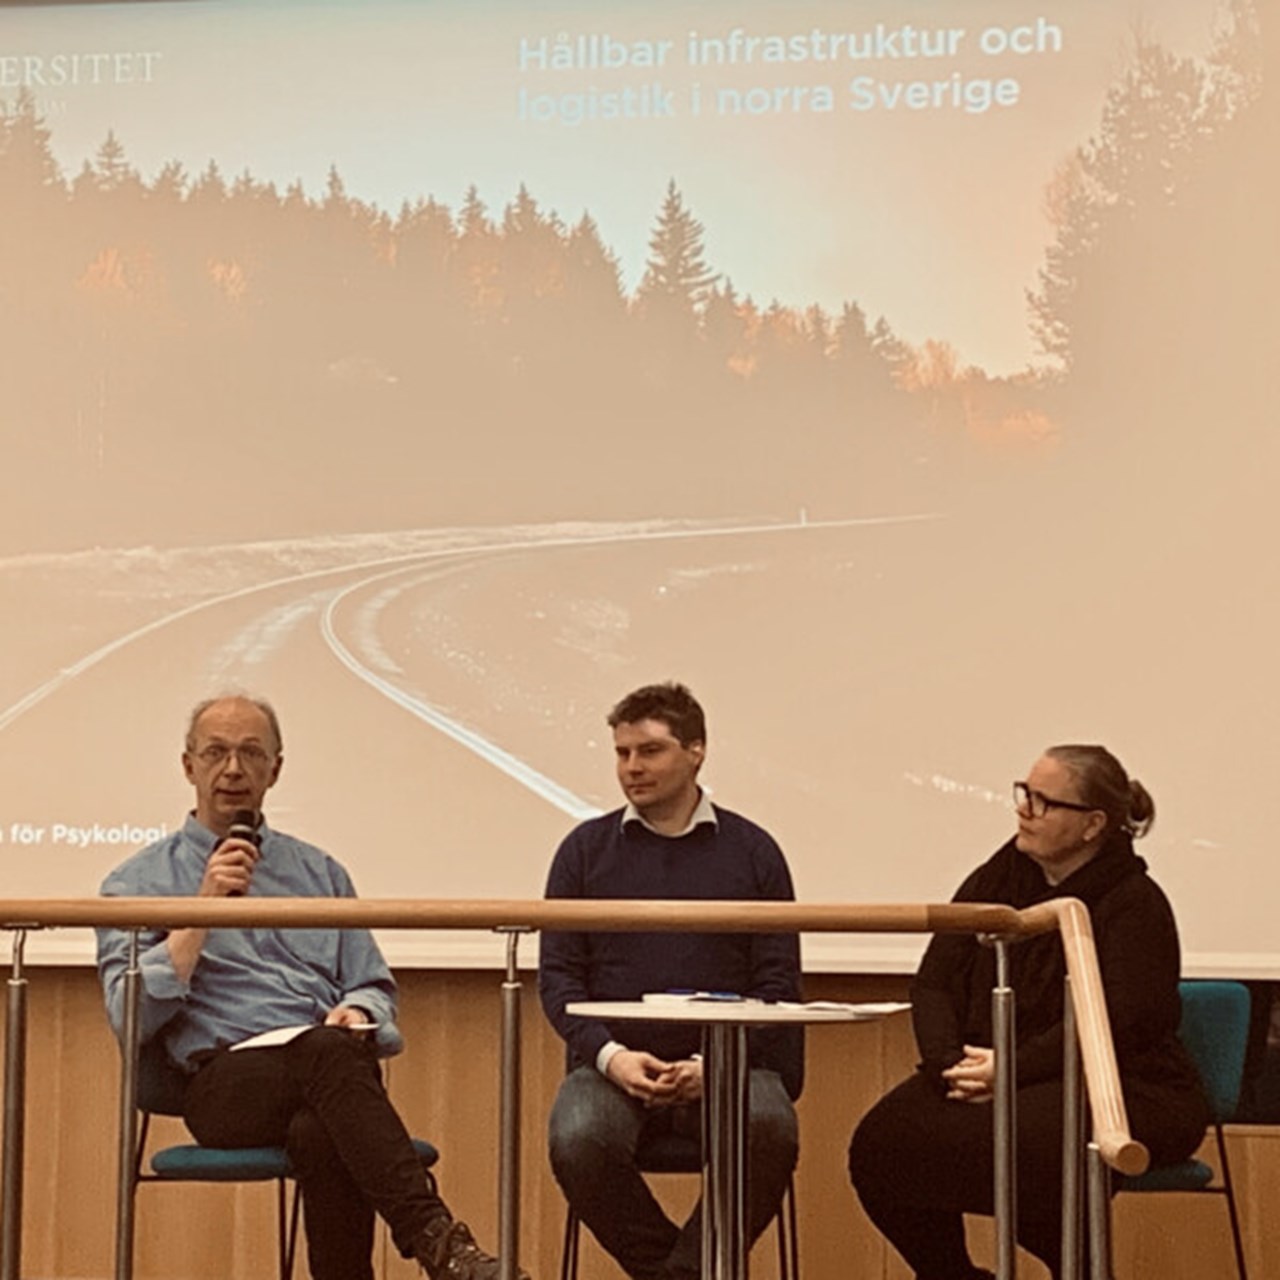 Tre personer sitter i panel. I bakgrunden kan man se en landsväg i genom norrländsk skog. Mannen längst till vänster talar i mickrofonen.